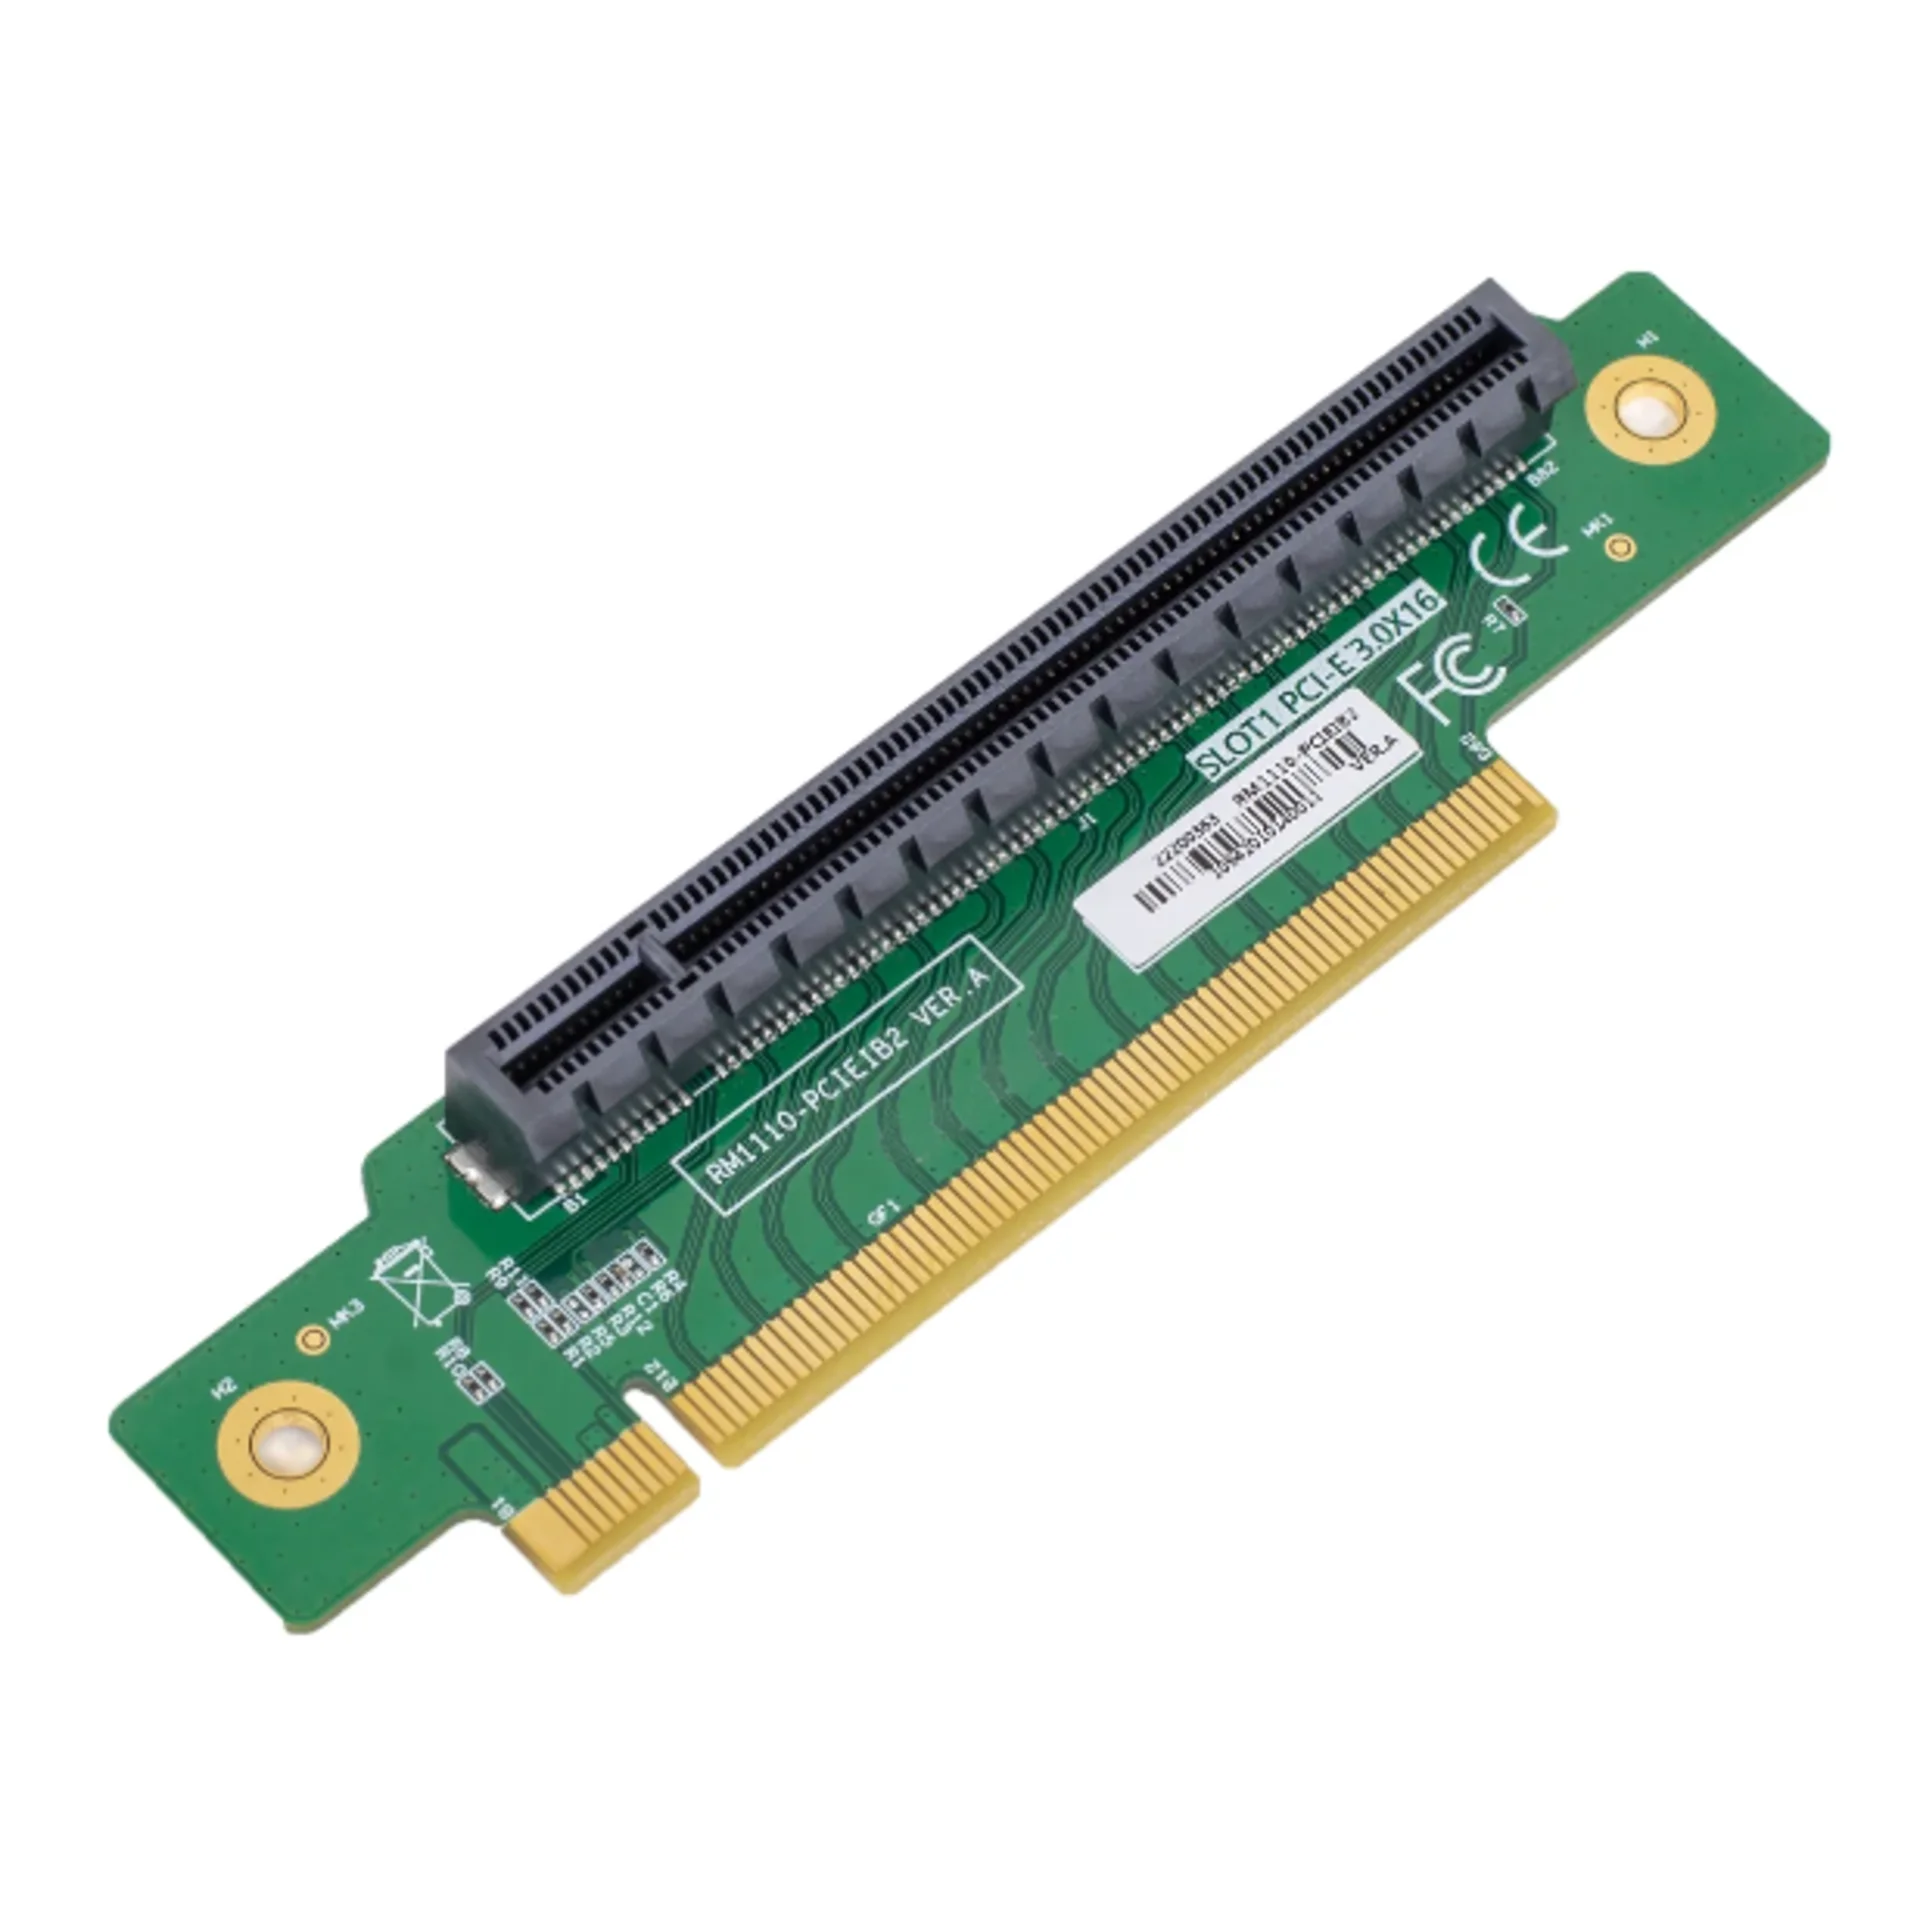 SNR-RM1110-PCIEIB2 - Адаптер 1x PCI-Ex16 для серверов SNR 1U серии RS/RE купить в Казани 	Адаптер 1x PCI-Ex16 для серверов SNR 1U серии RS/RE: SNR-SR1210RS и SNR-SR1204RS										Характери